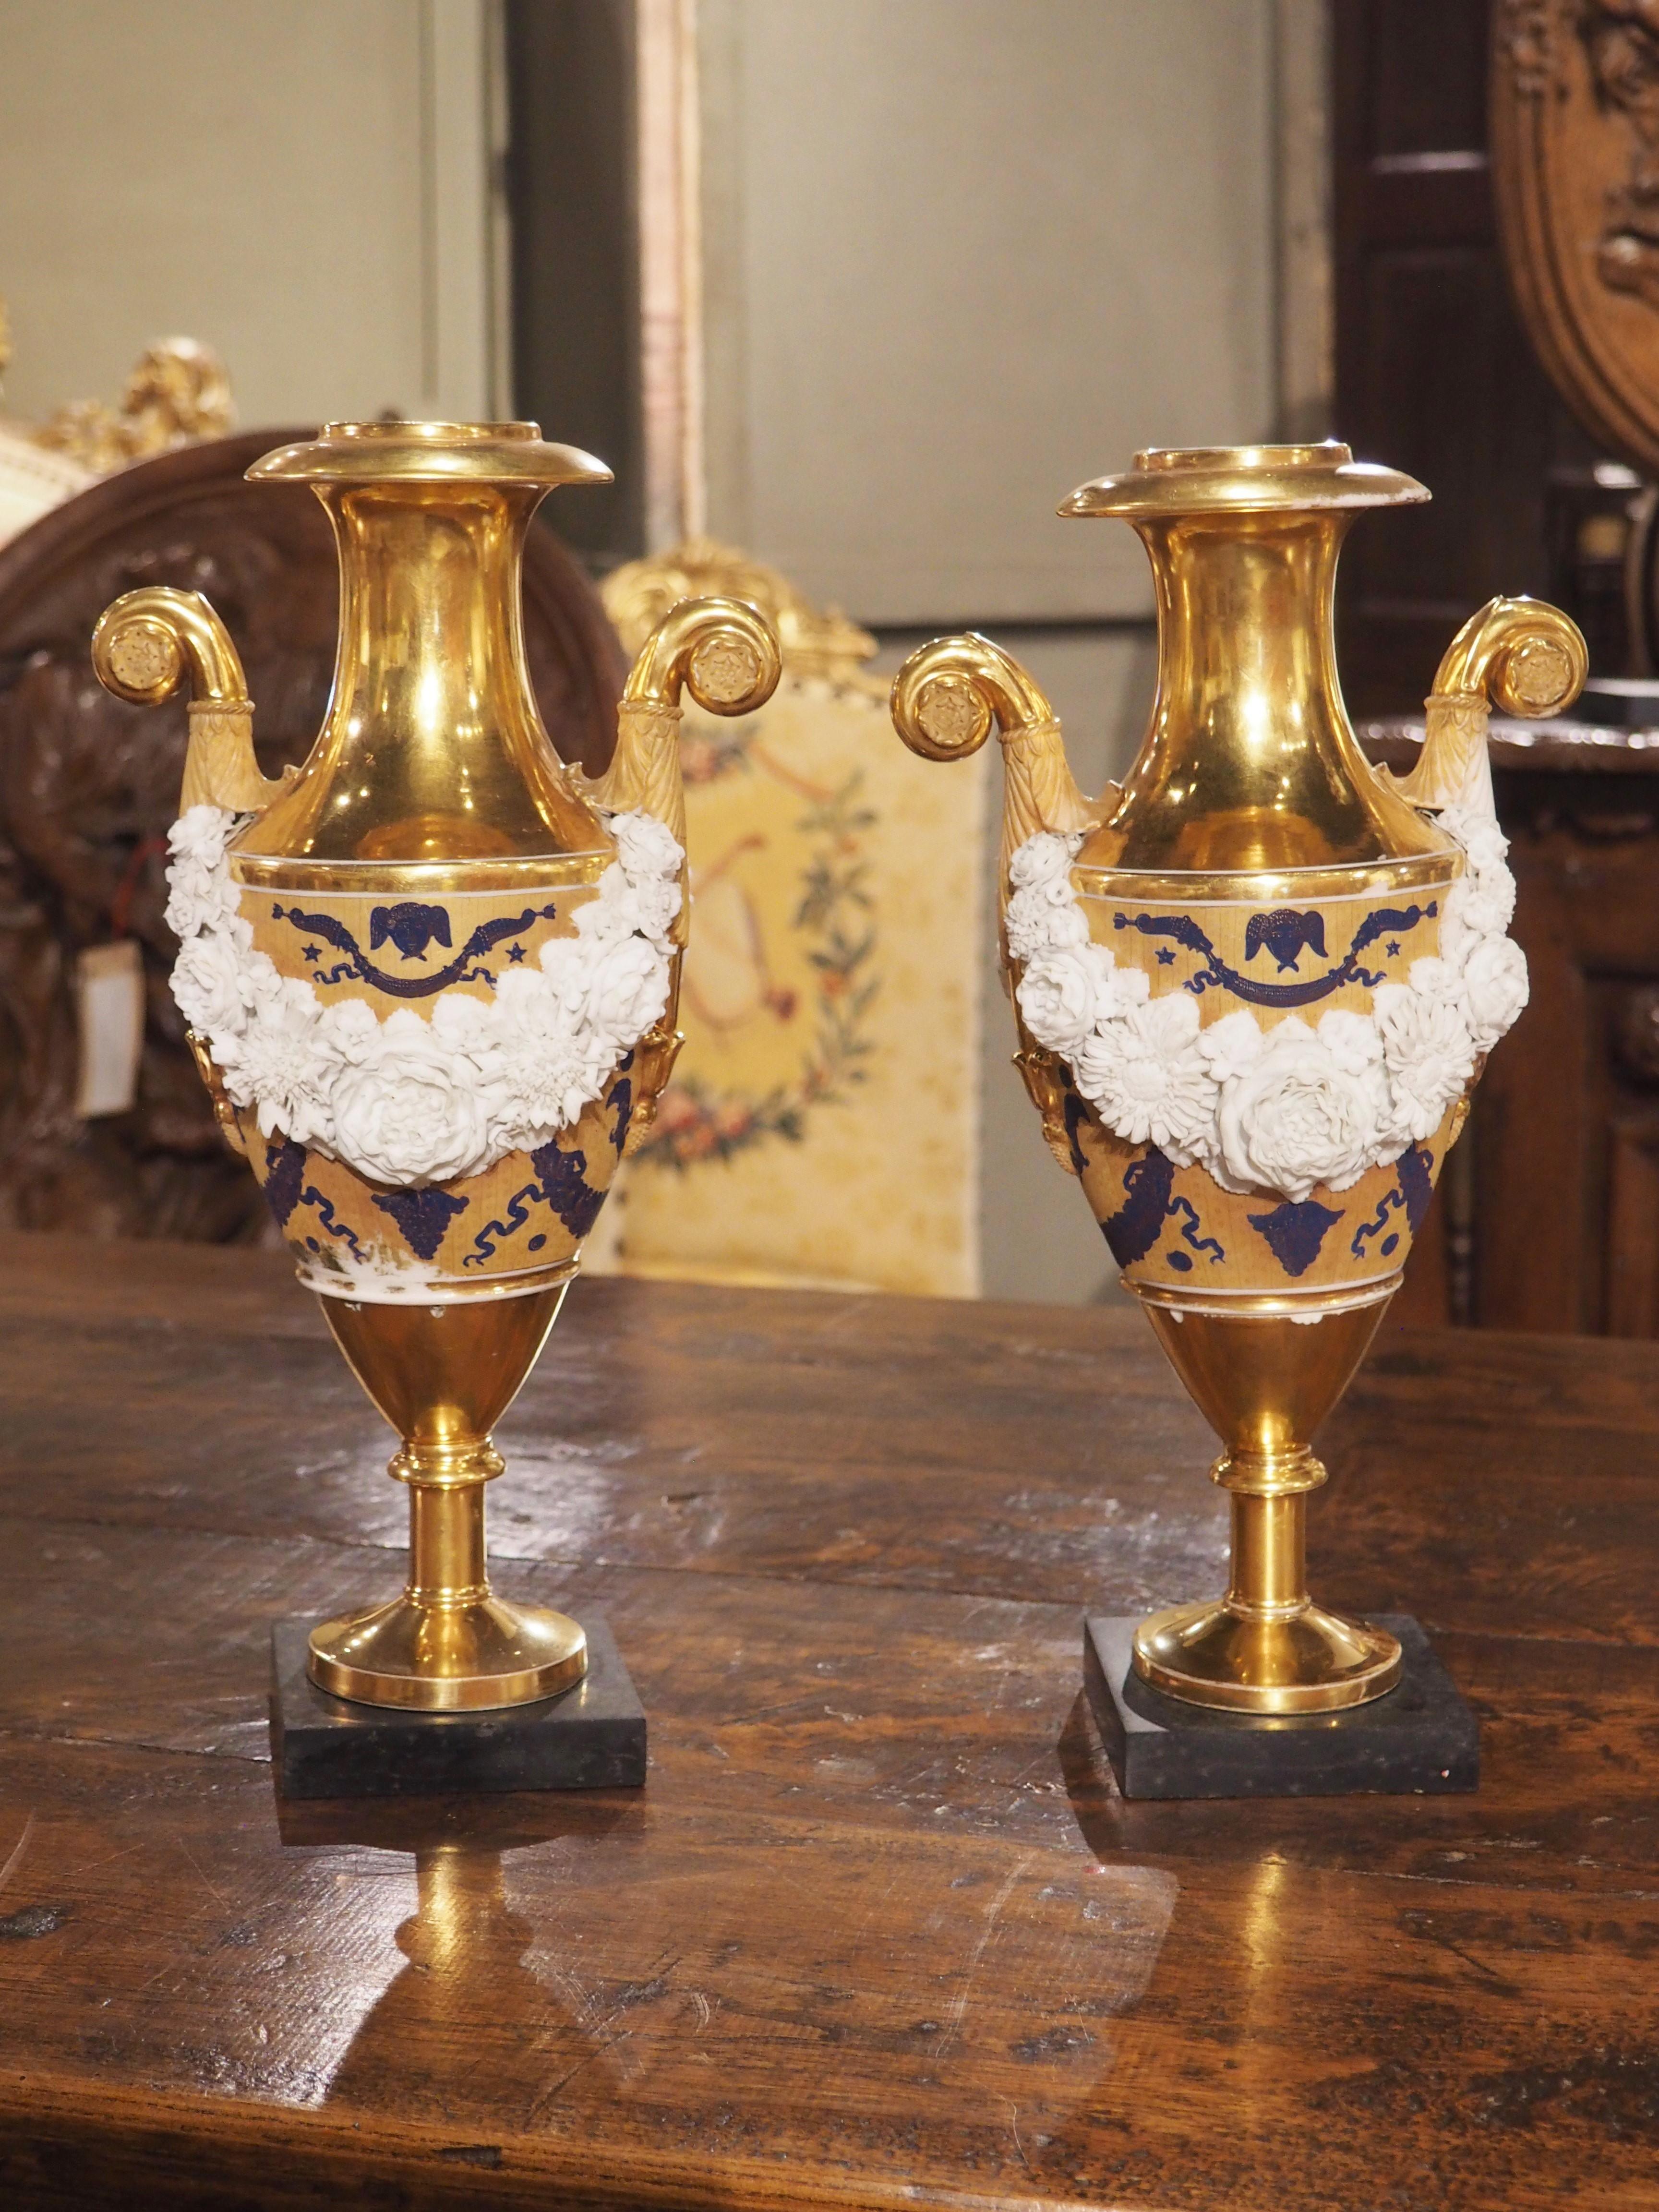 Dieses Paar französischer Porzellanvasen mit neoklassizistischen Elementen ist im Stil von Ludwig XVI. gehalten. CIRCA 1870 hergestellt, werden die atemberaubenden Details der Girlanden durch die reiche Farbgebung der handgemalten Elemente und die